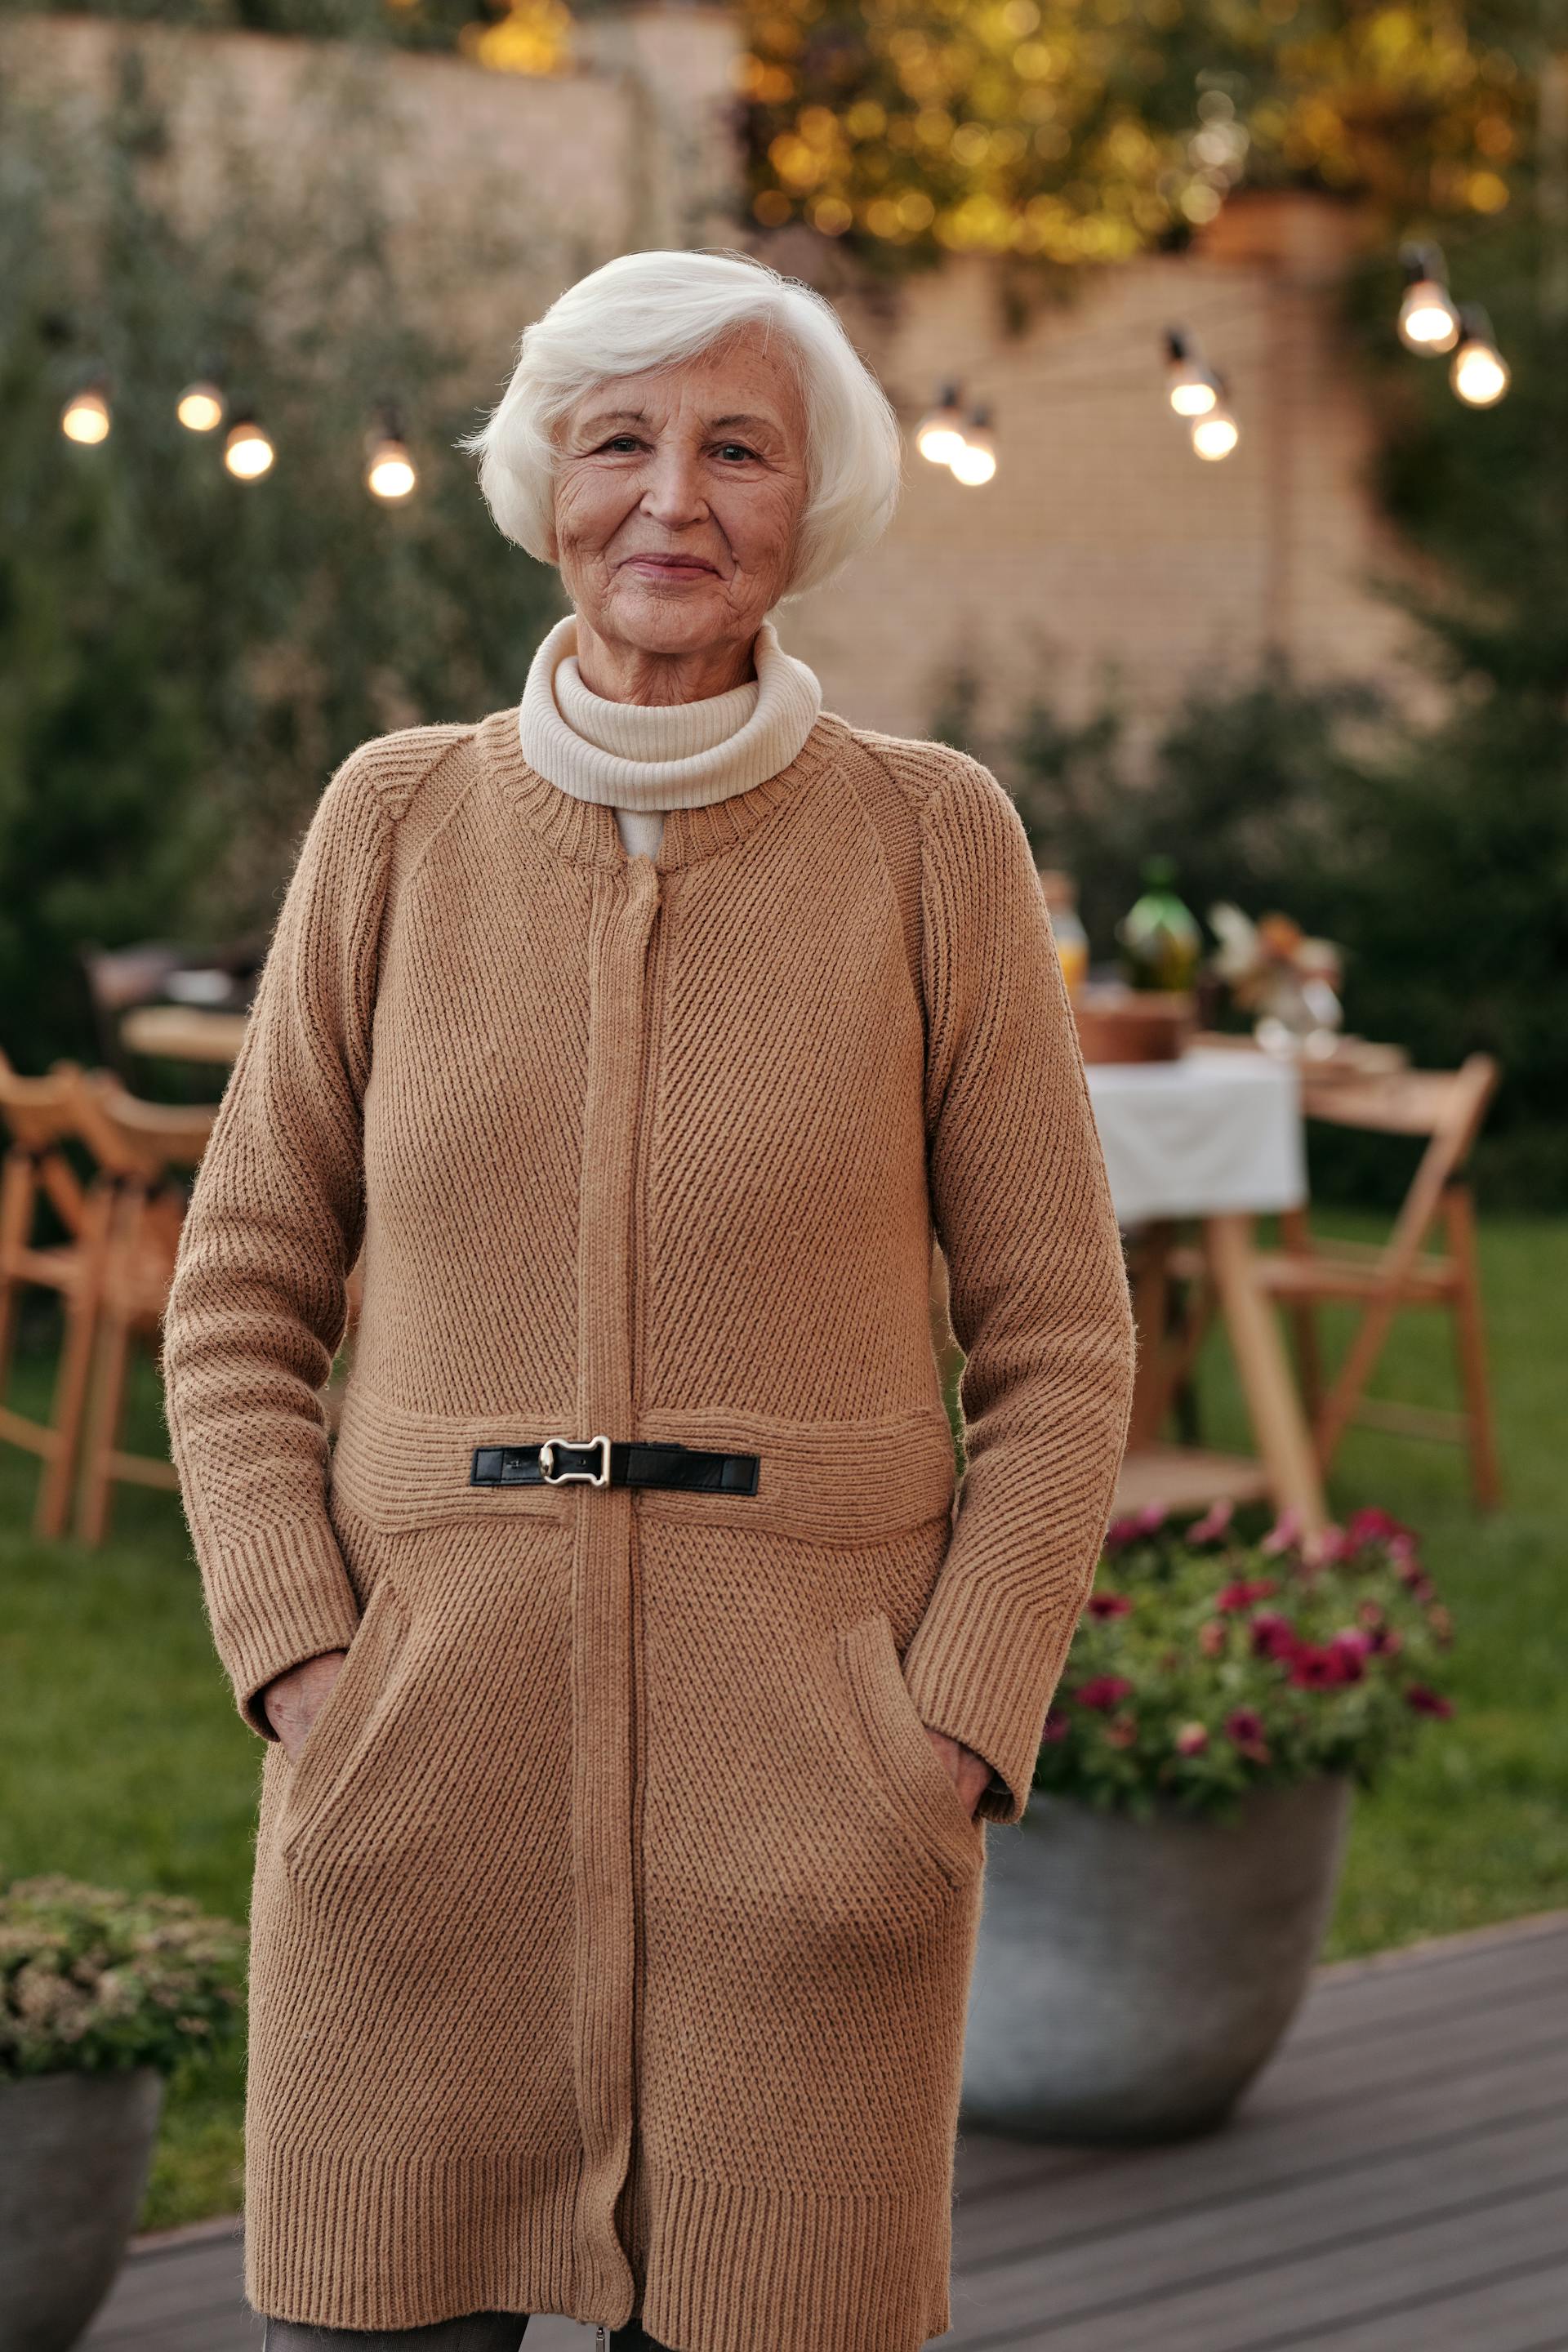 Eine lächelnde alte Frau, die einen Mantel trägt | Quelle: Pexels